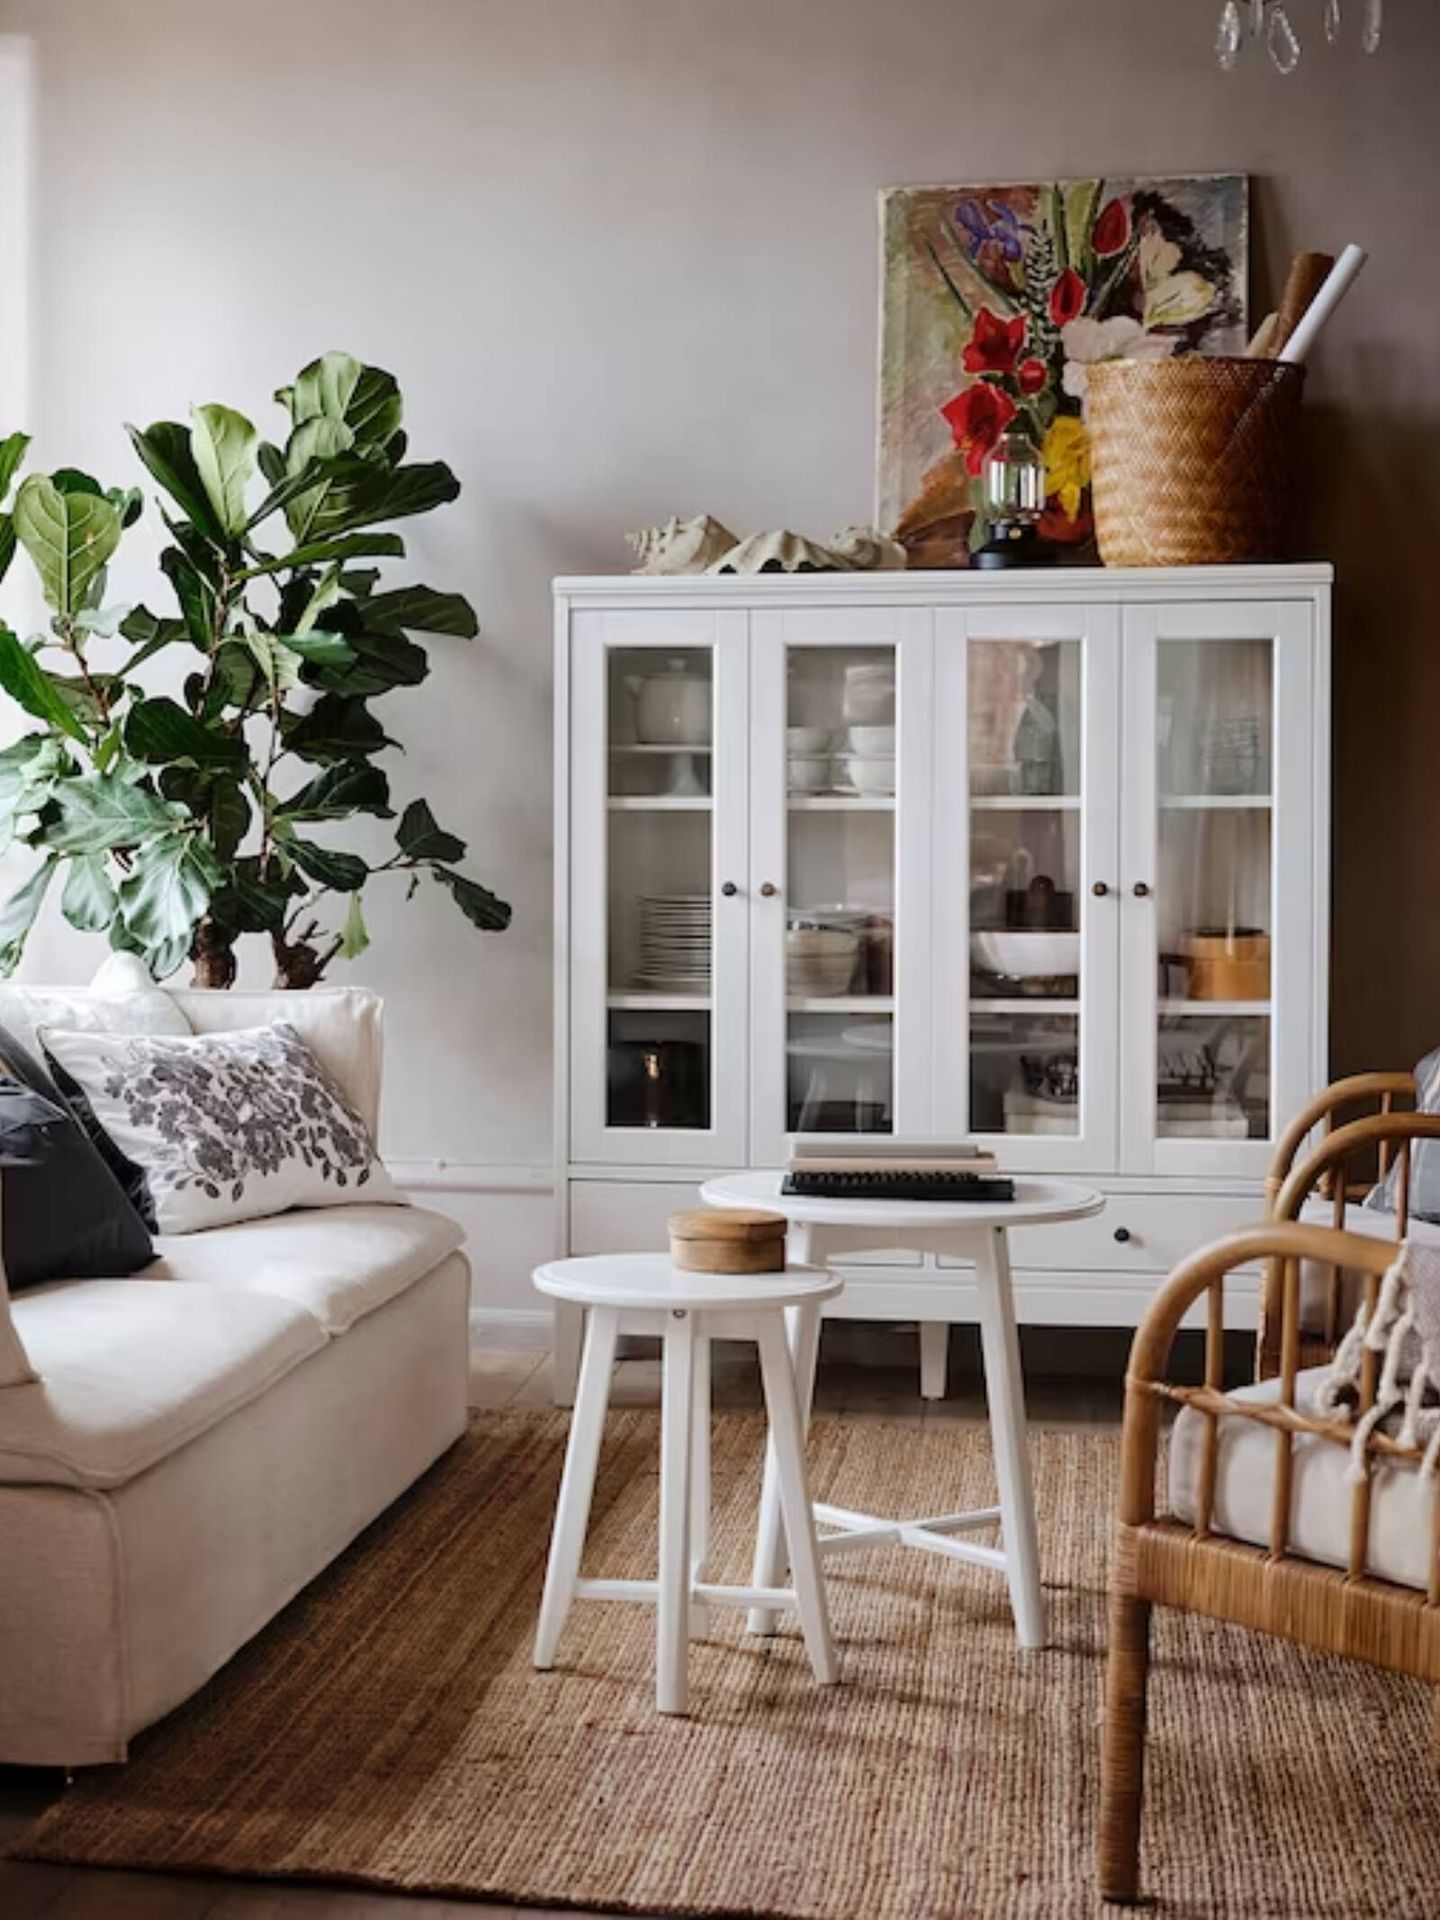 El nuevo mueble de Ikea es ideal para toda la casa. (Ikea/Cortesía)